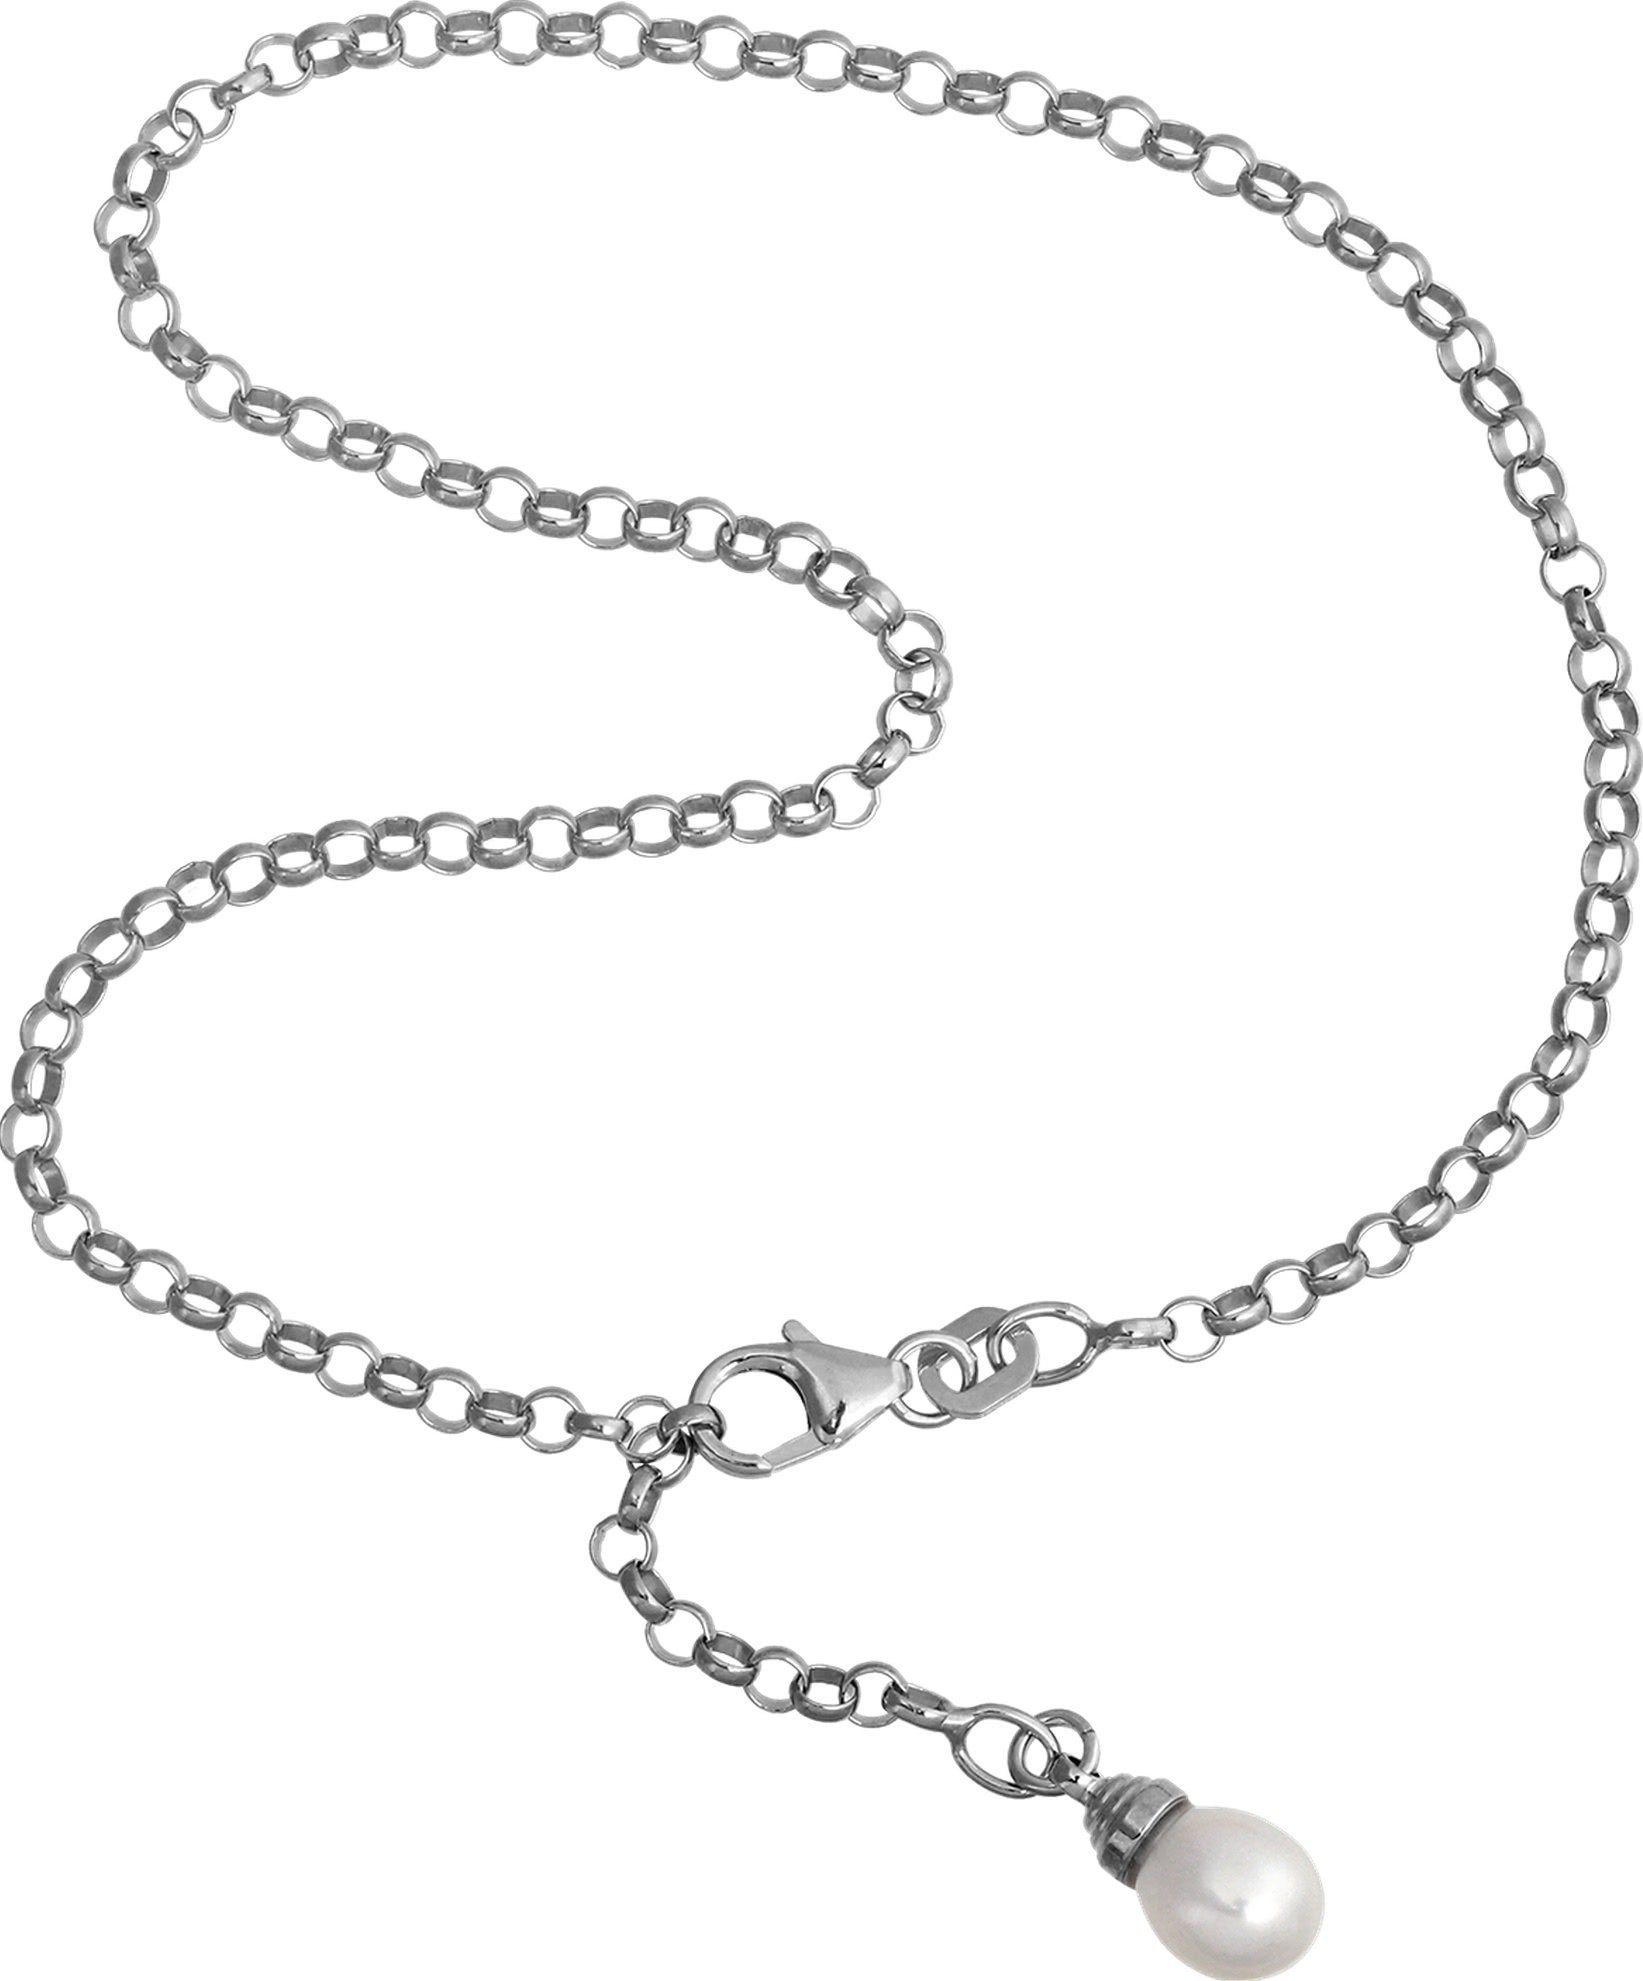 SilberDream Fußkette mit Anhänger SilberDream Fußkette weiß für Damen 925 (Fußkette), Damen Fußkette aus 925 Sterling Silber, Farbe: weiß